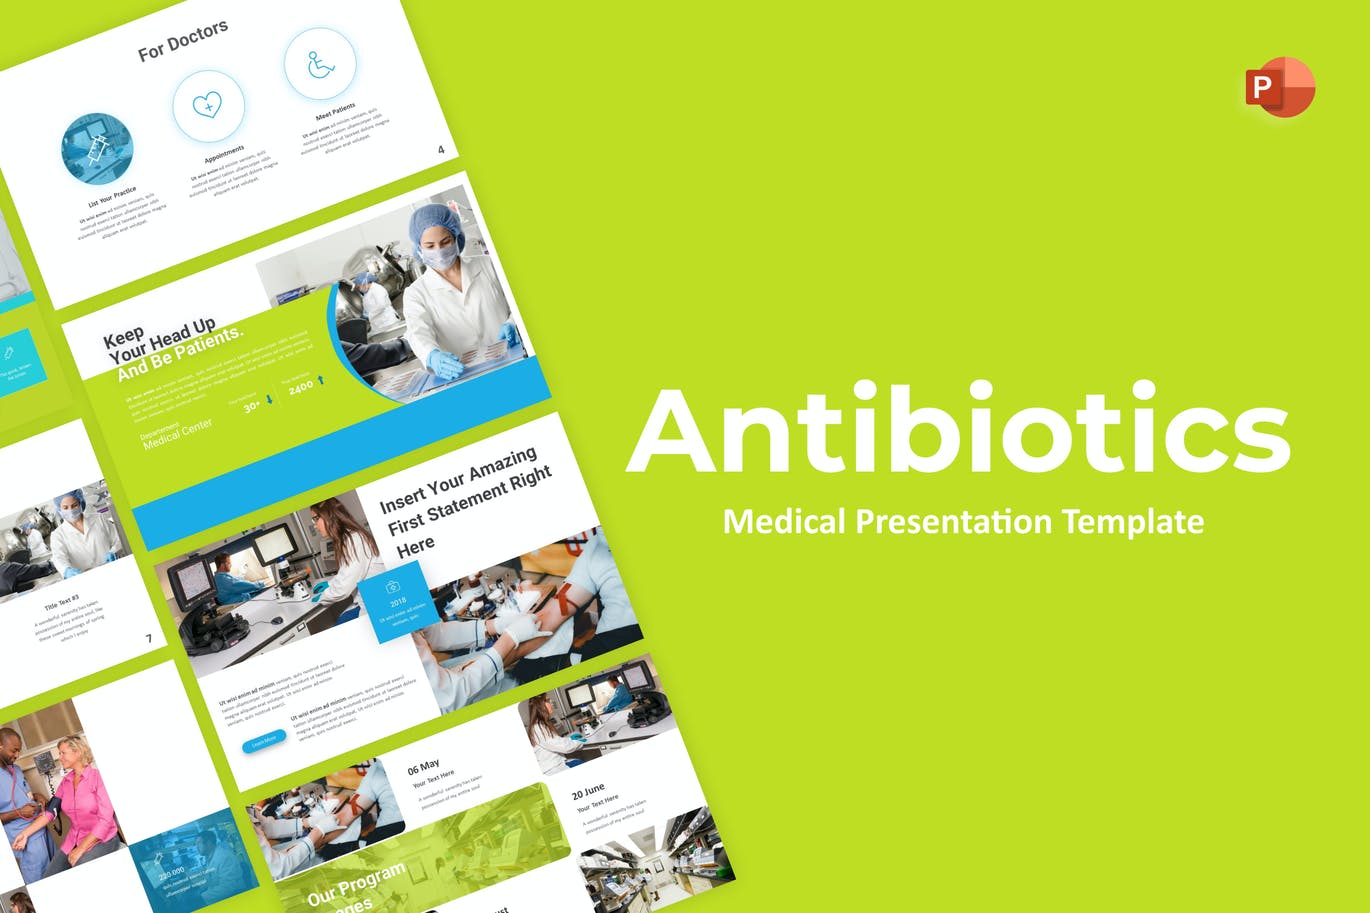 医学介绍幻灯片演示PPT模板 Antibiotics Medical PowerPoint Template 幻灯图表 第1张